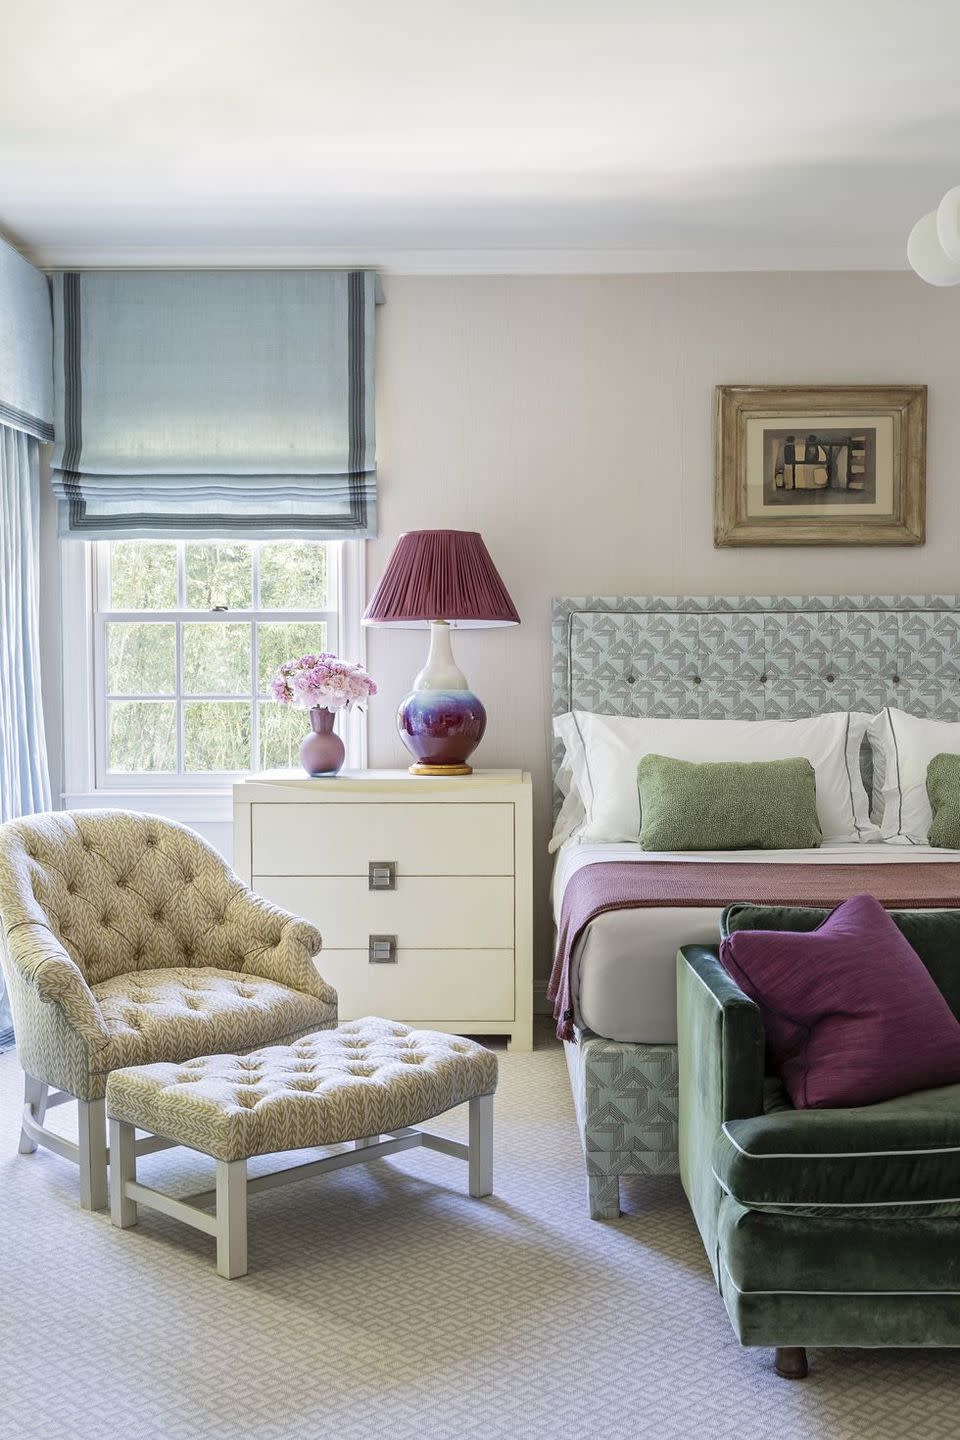 purple, sage, and gray bedroom veranda relaxing bedroom decor